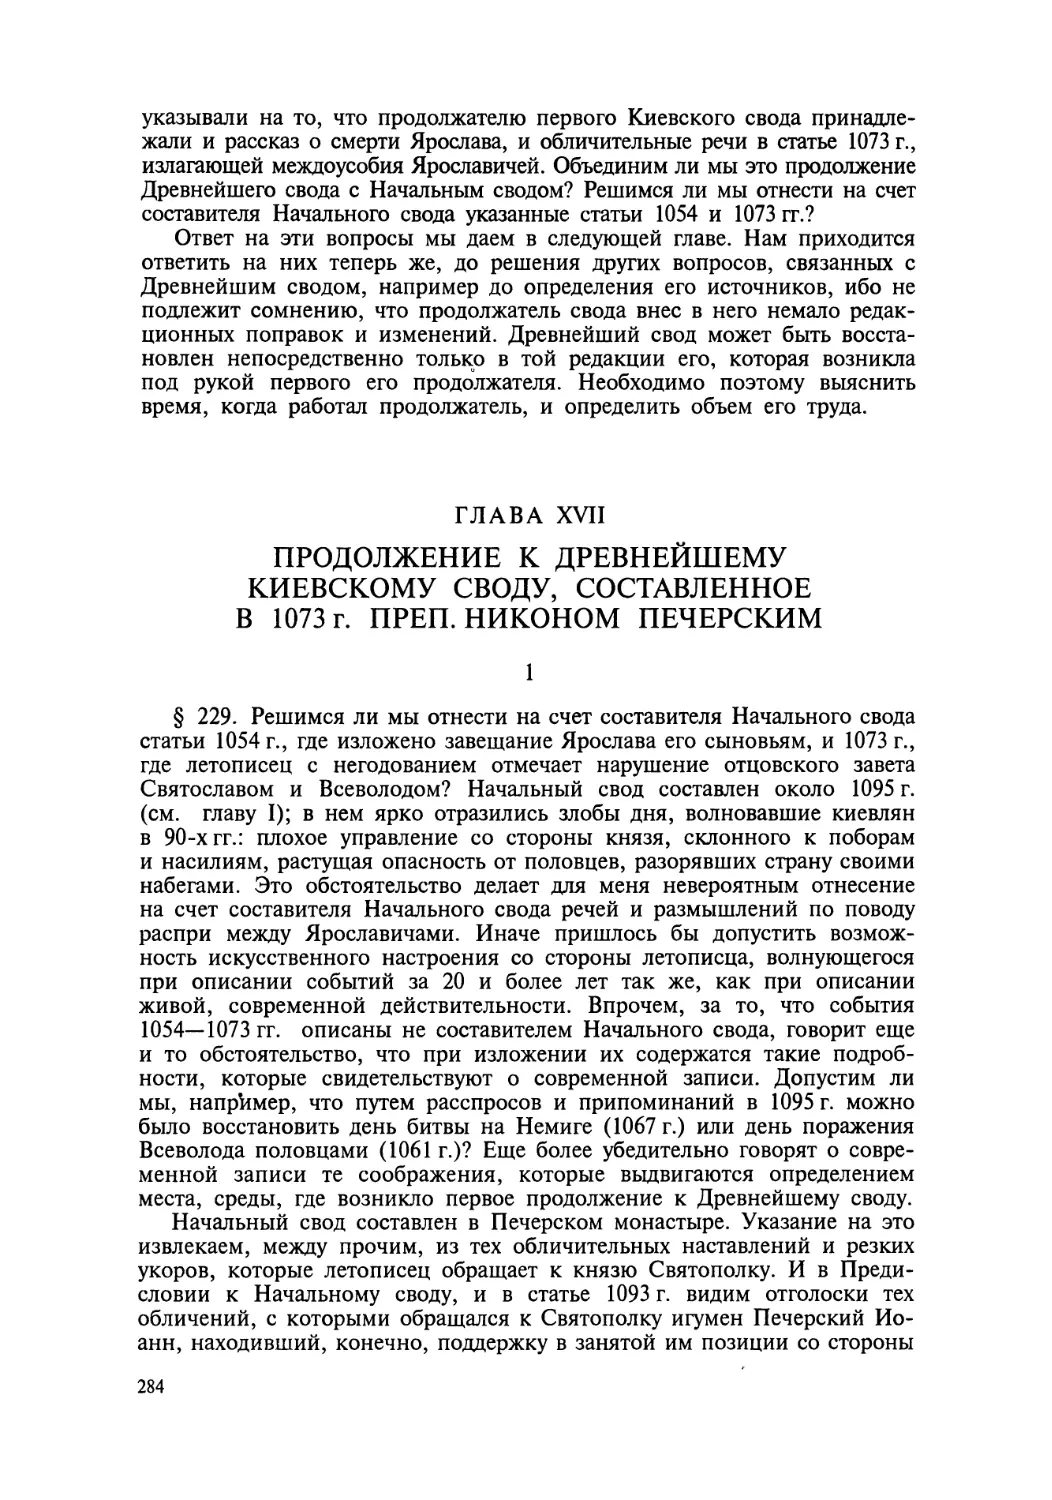 Глава XVII. Продолжение к Древнейшему Киевскому своду, составленное в 1073 г. преп. Никоном Печерским